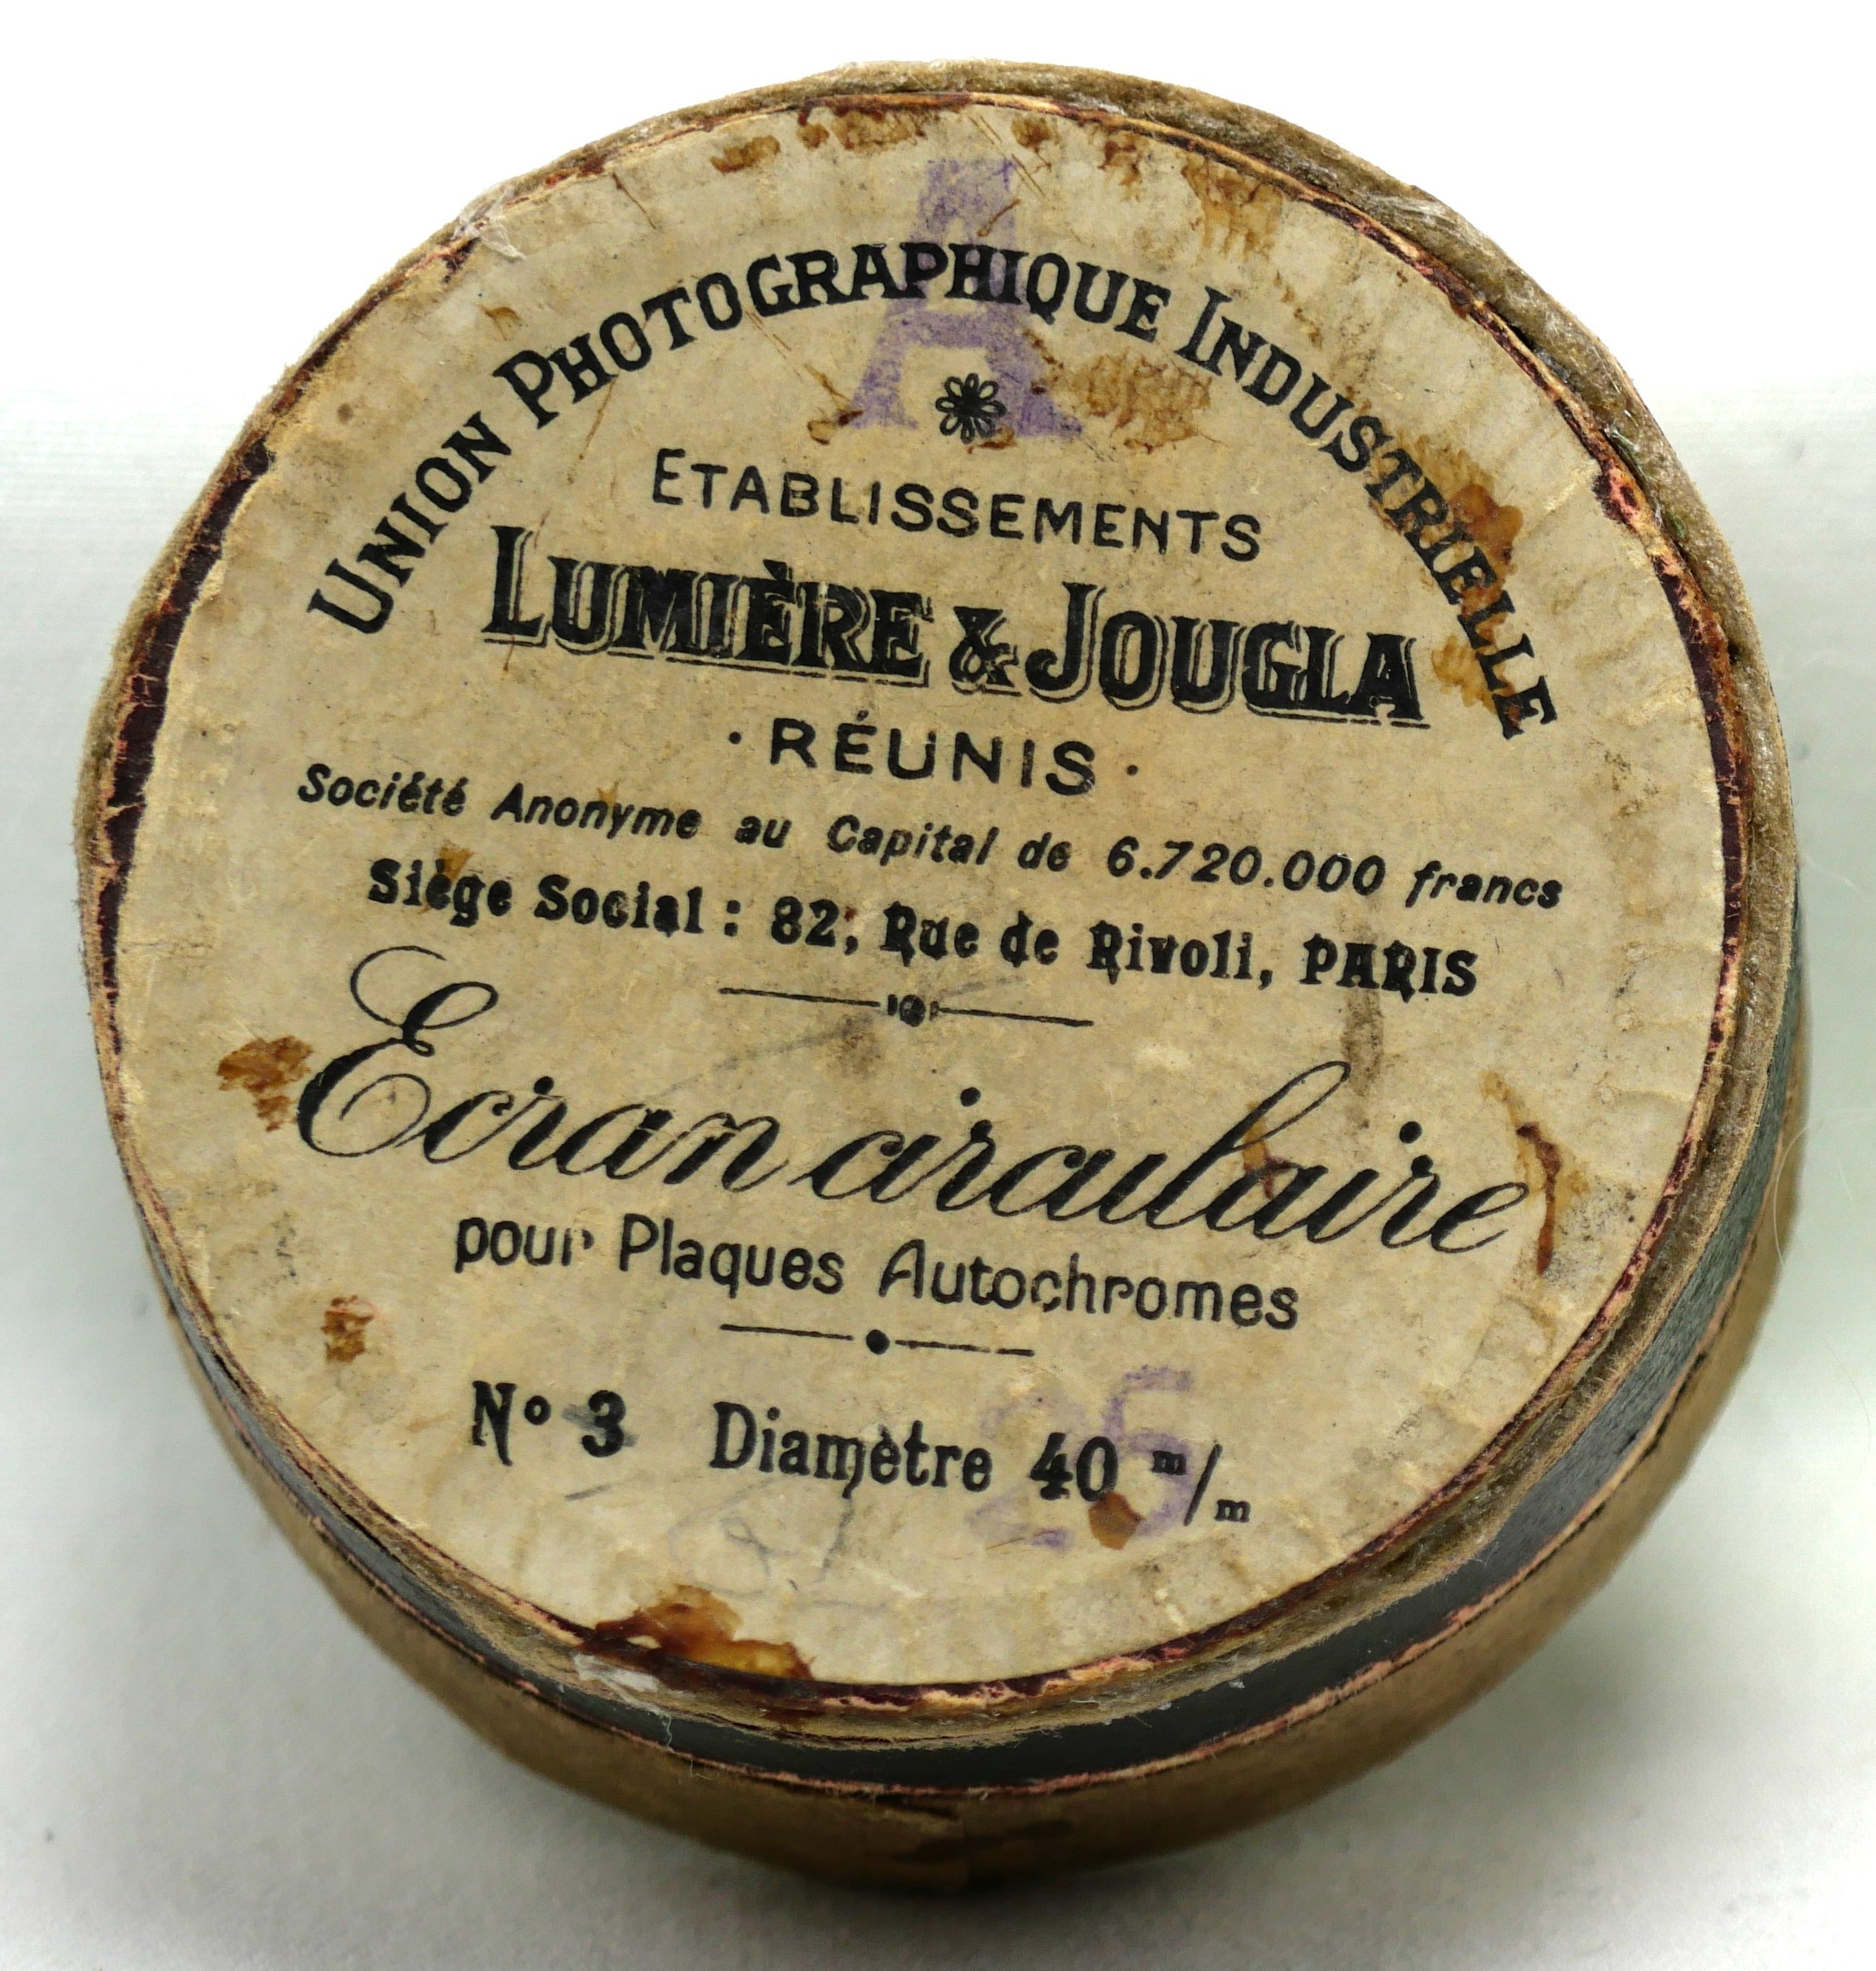 Lumière et Jougla - Ecran Circulaire n°3 - 40 mm - boîte vide